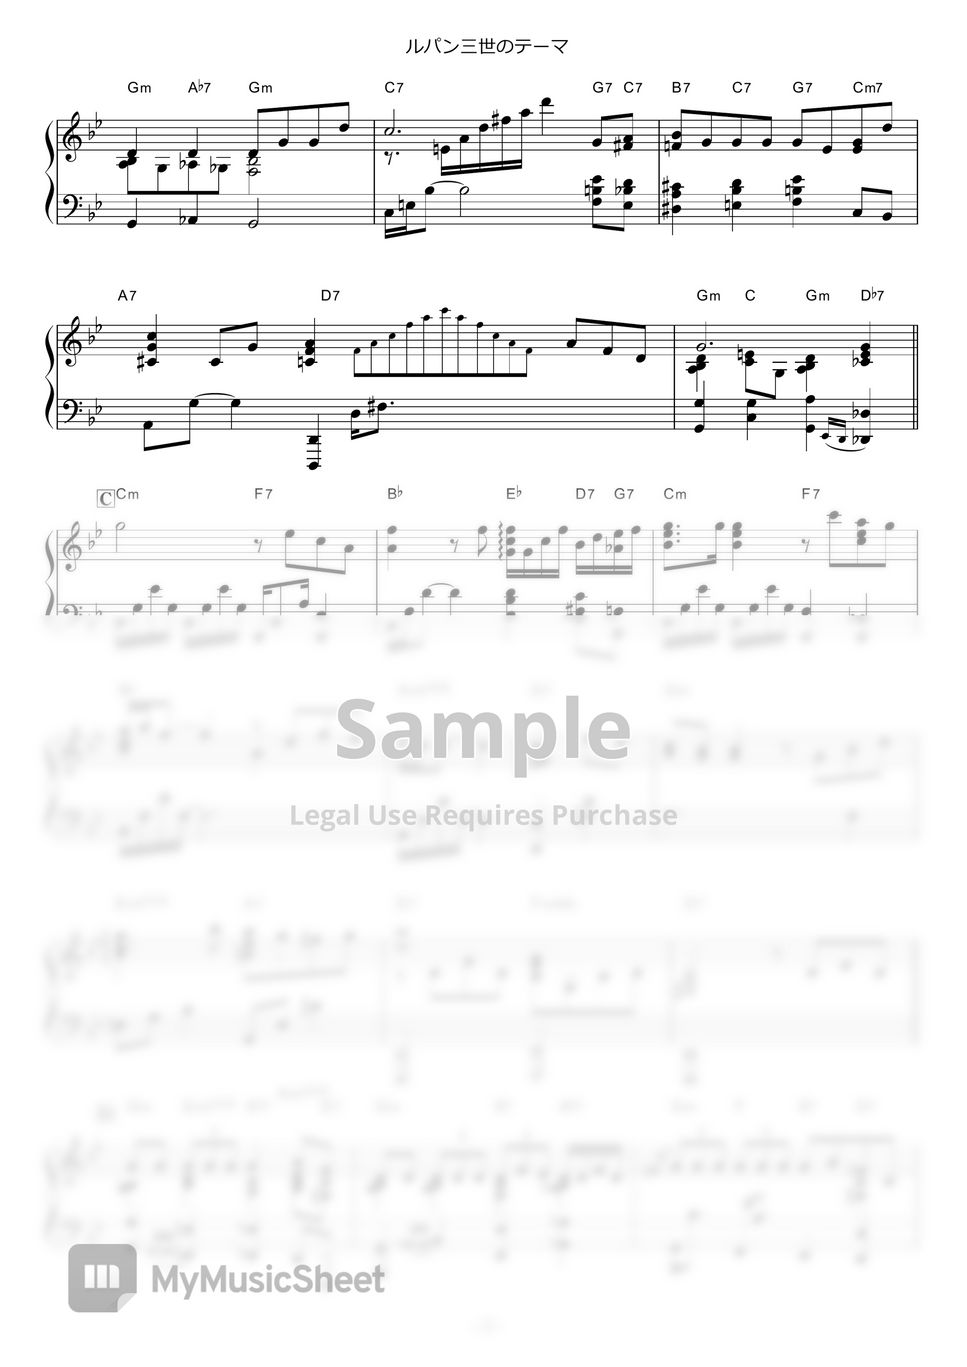 大野雄二 - ルパン三世のテーマ (slow jazz ver.) by piano*score